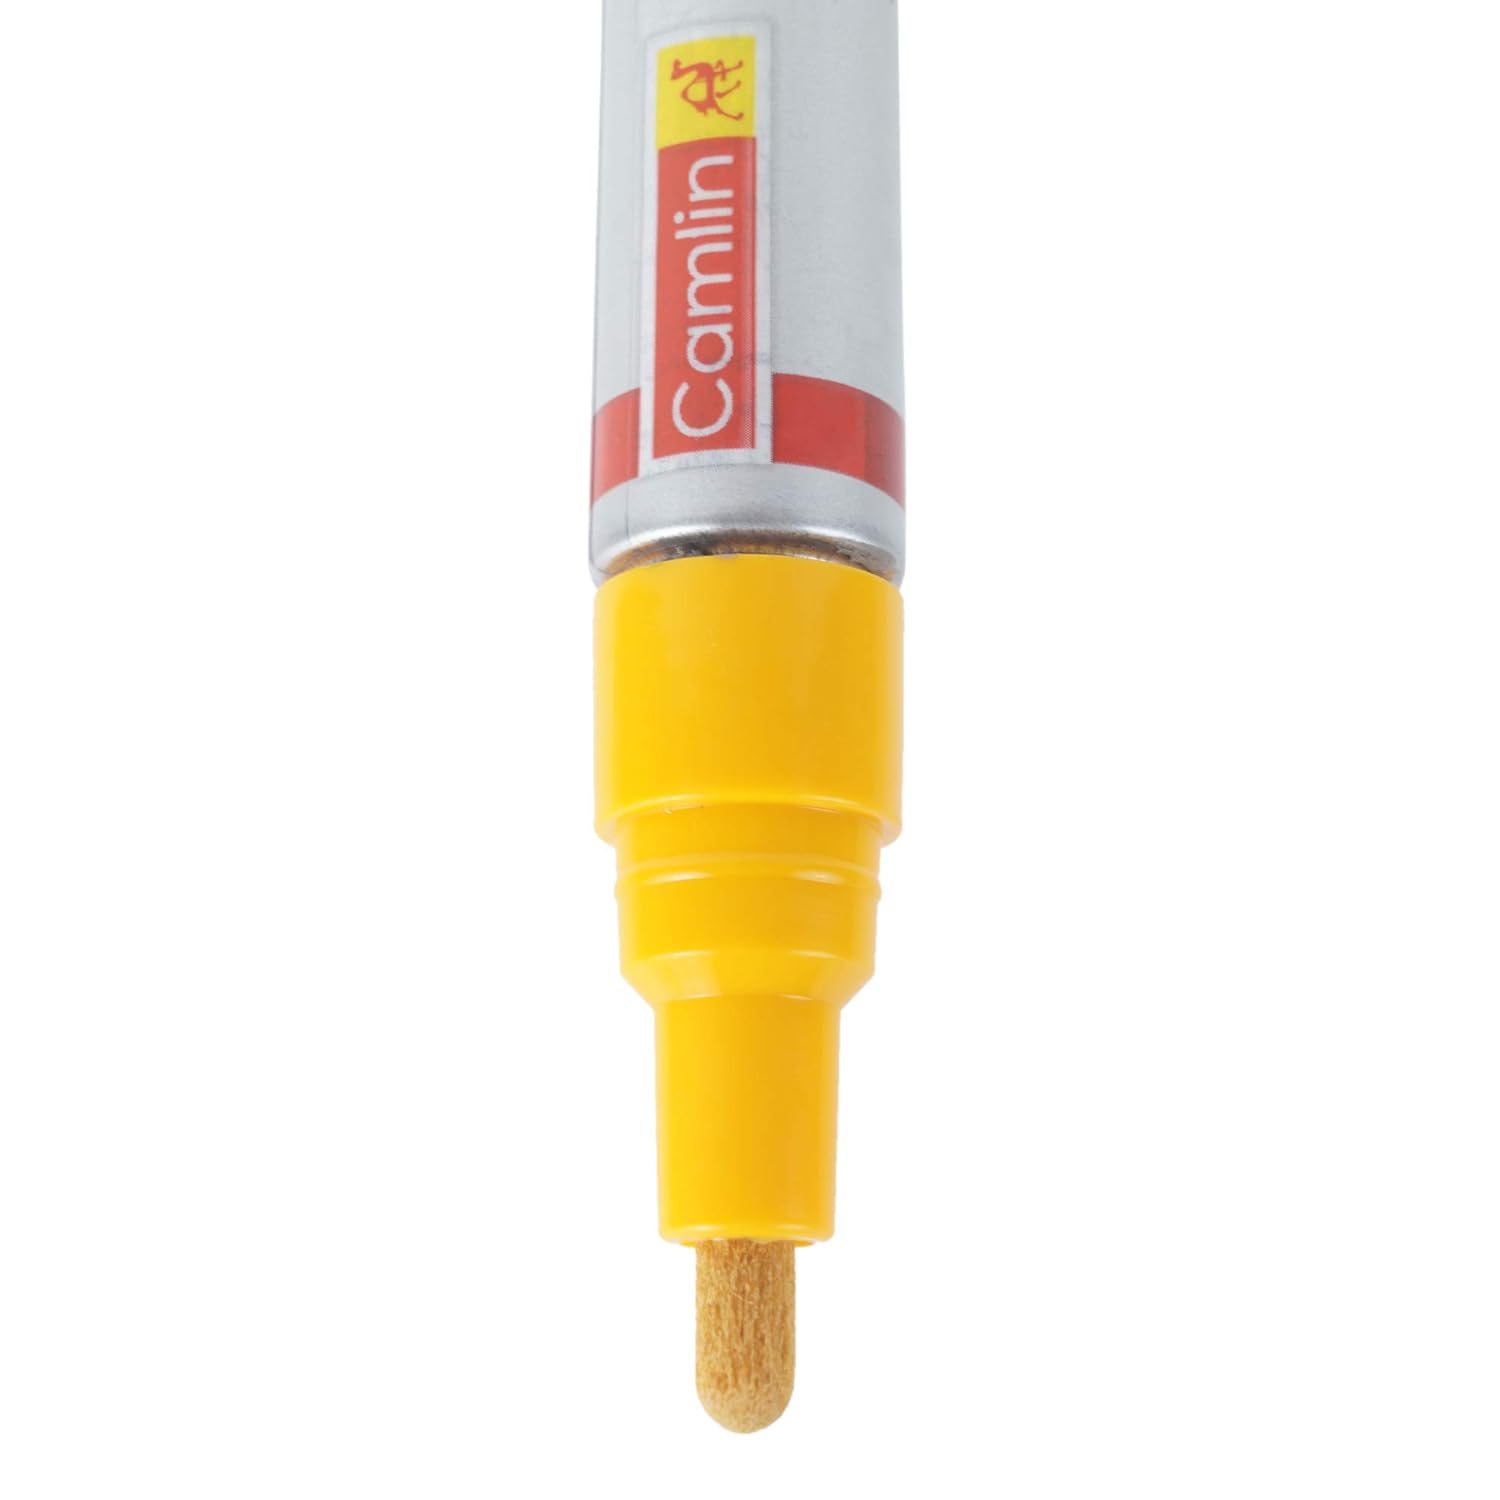 Paint Marker Pen - Yellow Camlin